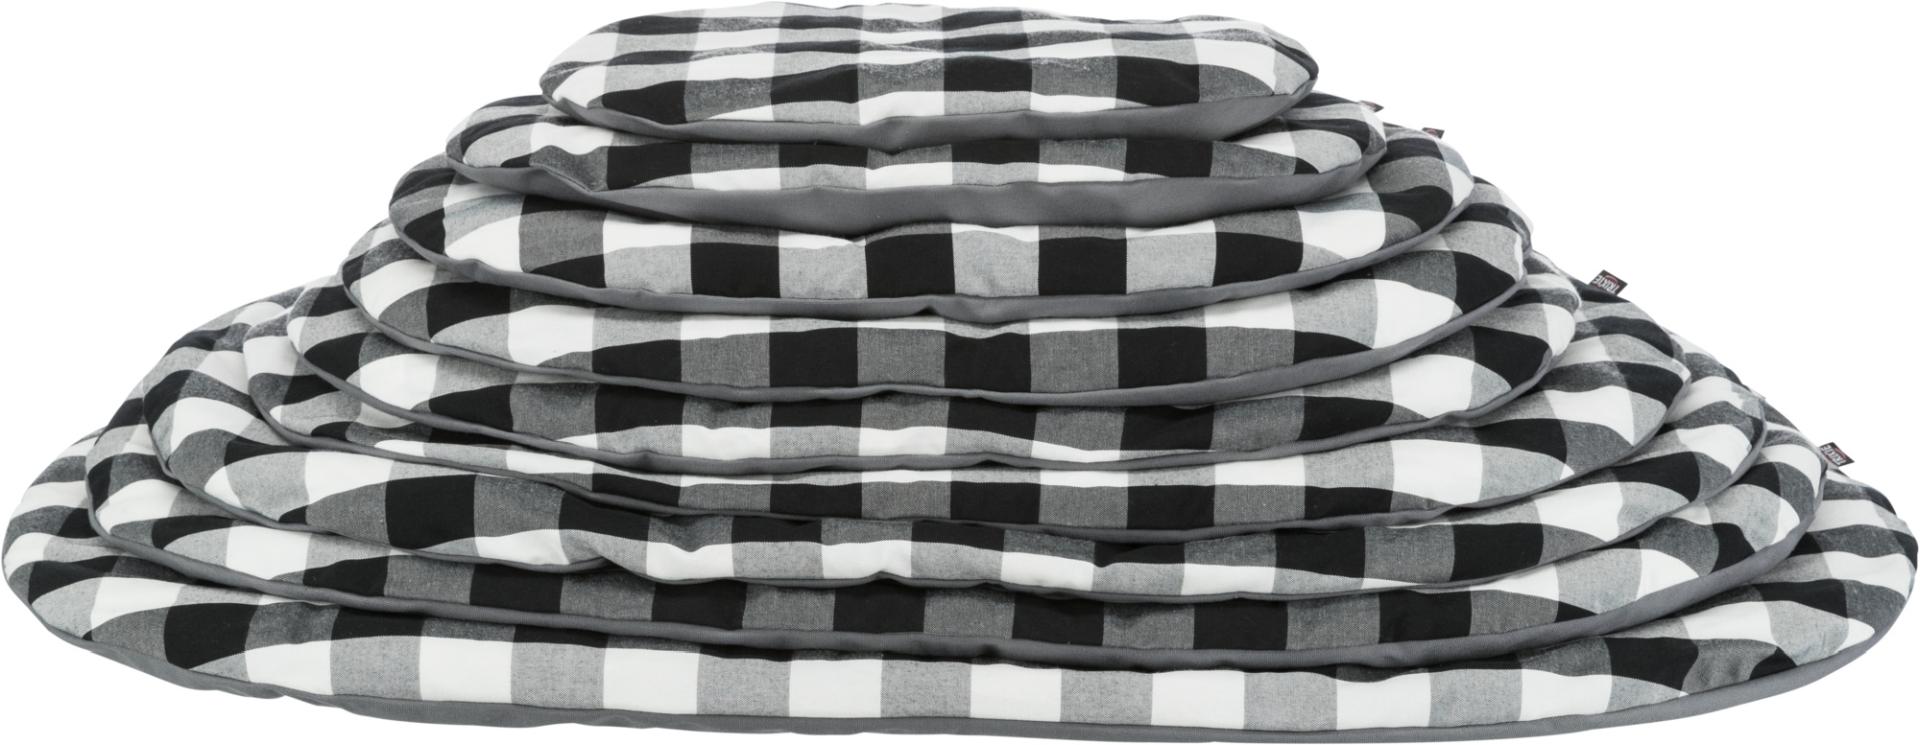 TRIXIE Kissen Scoopy, oval, 77 x 50 cm, schwarz / weiß / grau